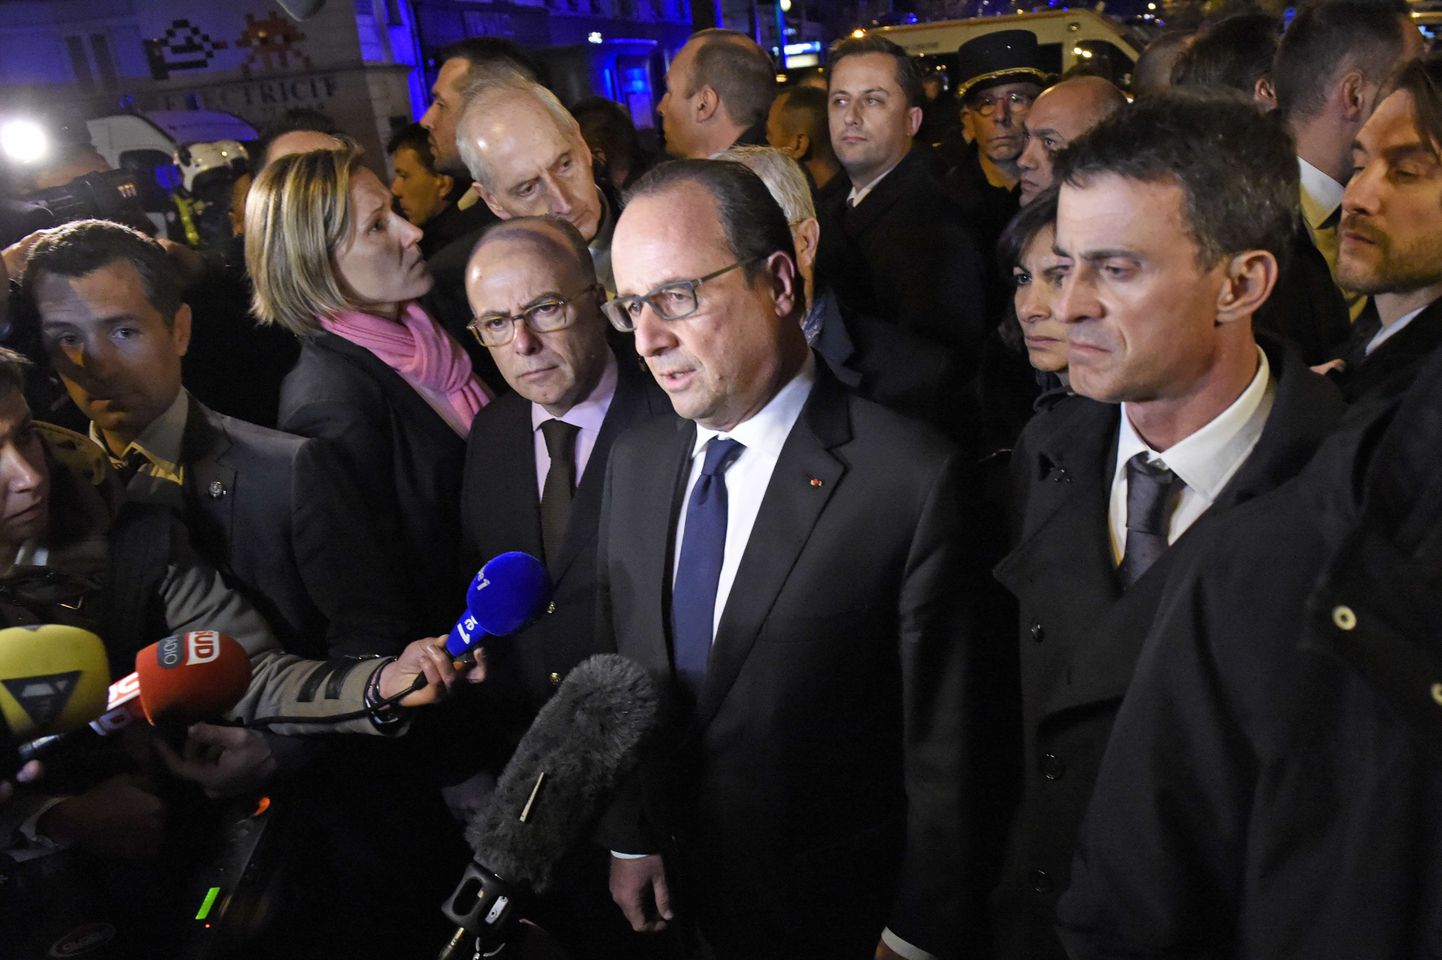 Prantsuse president Francois Hollande ja siseminister Bernard Cazeneuve täna varahommmikul reporterite küsimustele vastamas.